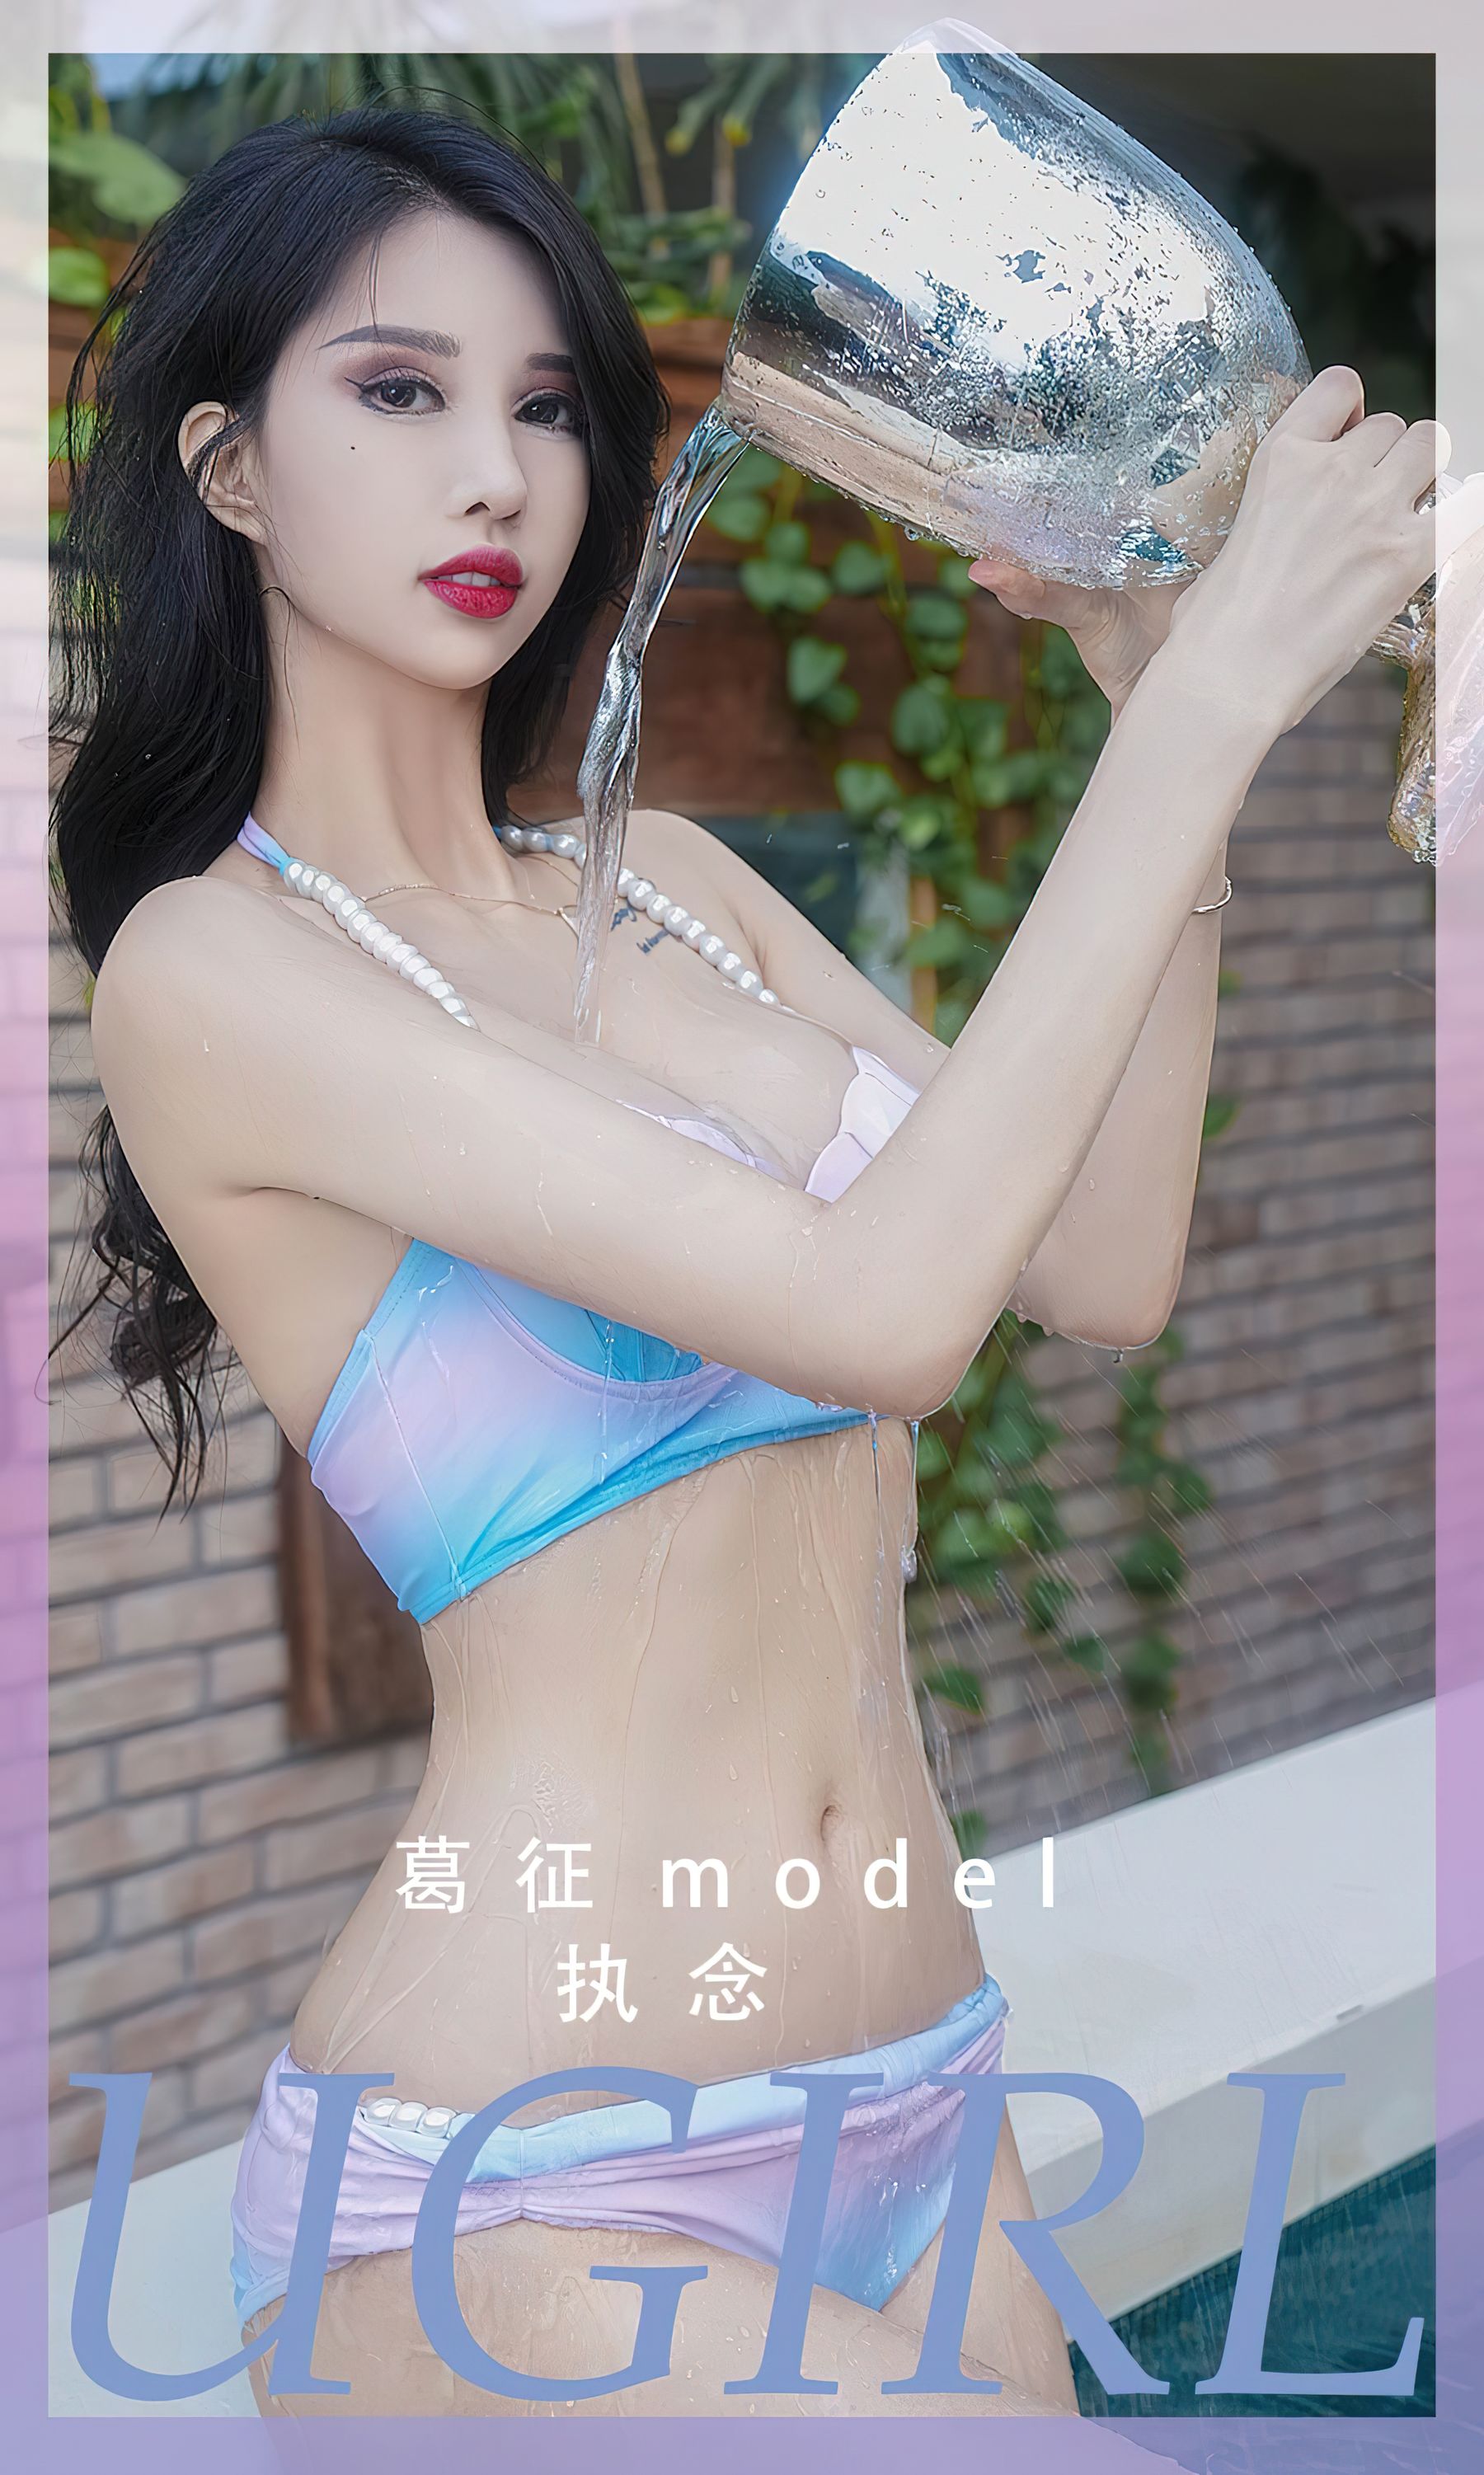 [Ugirls]爱尤物 No.2553 执念 葛征Model/(35P)